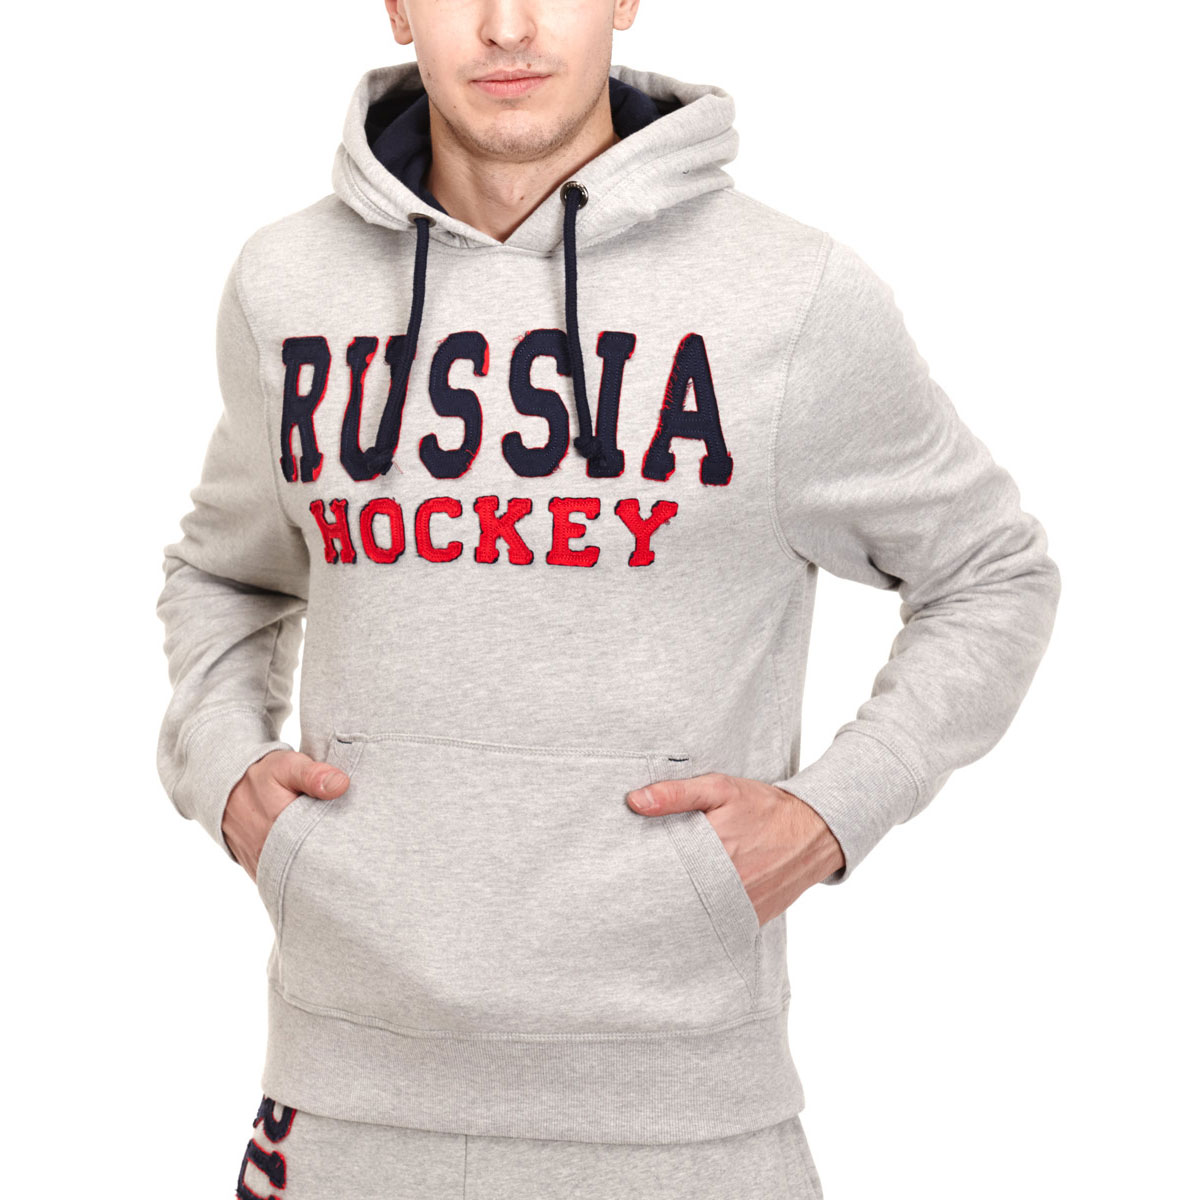    Atributika & club Russia Hockey Vintage SR